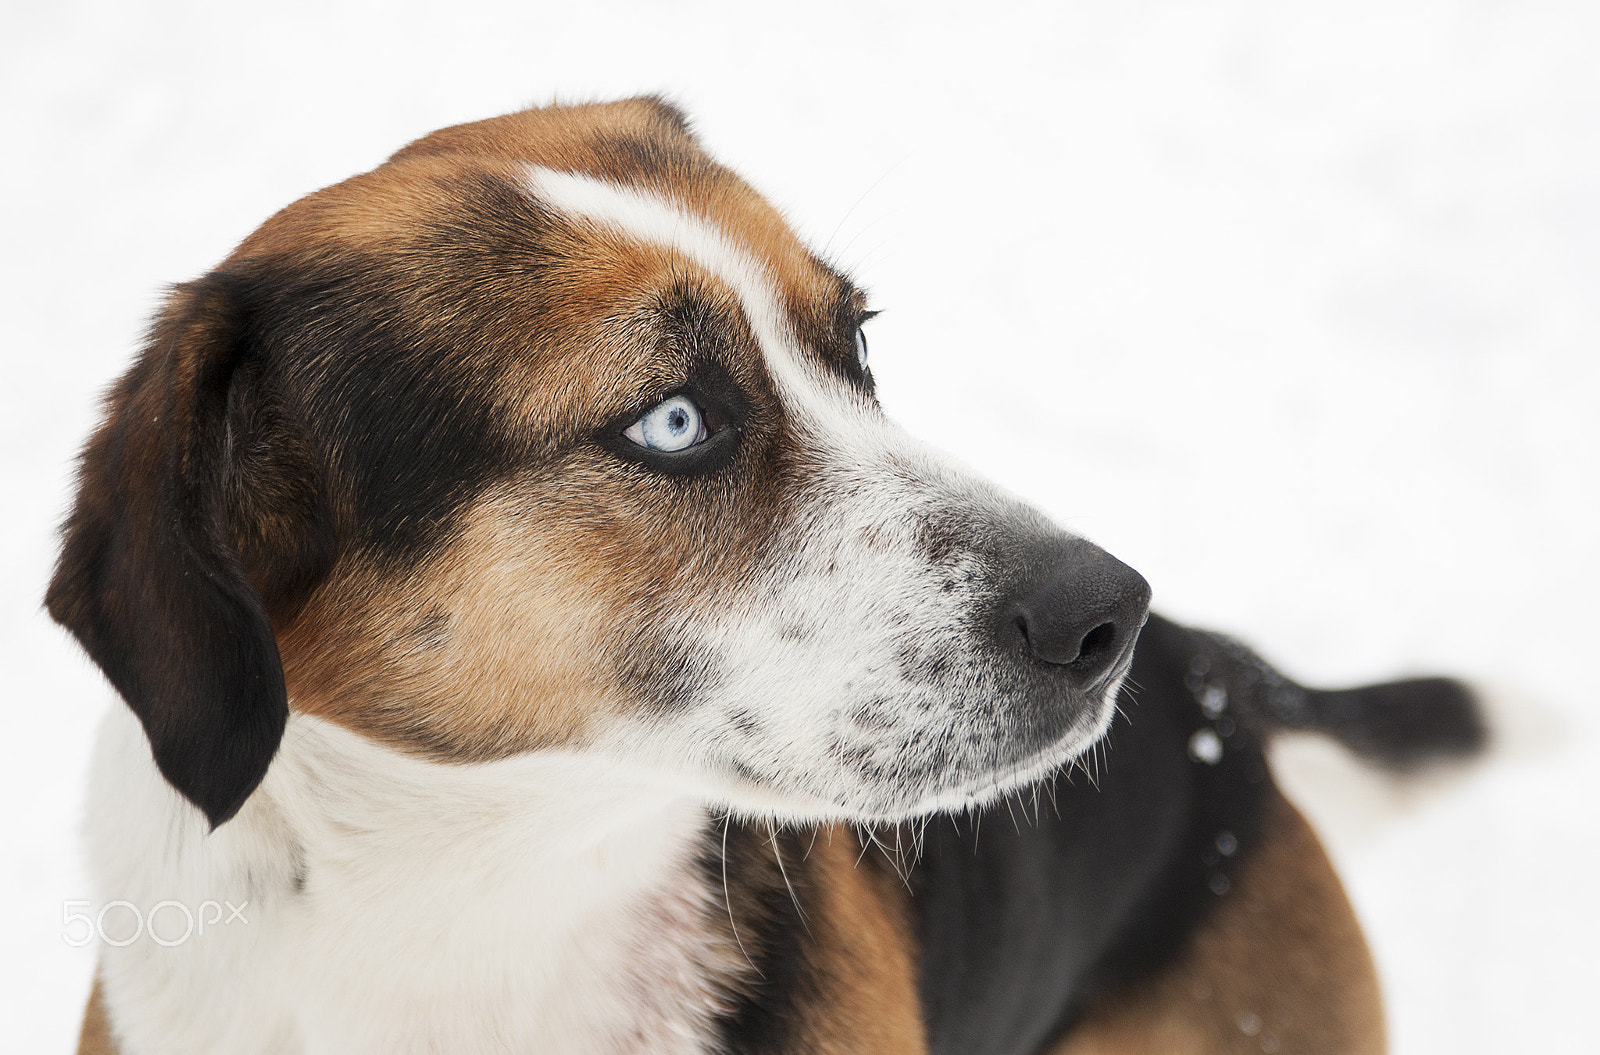 Nikon D300 + AF-S Zoom-Nikkor 24-85mm f/3.5-4.5G IF-ED sample photo. Dog portrait in snow photography